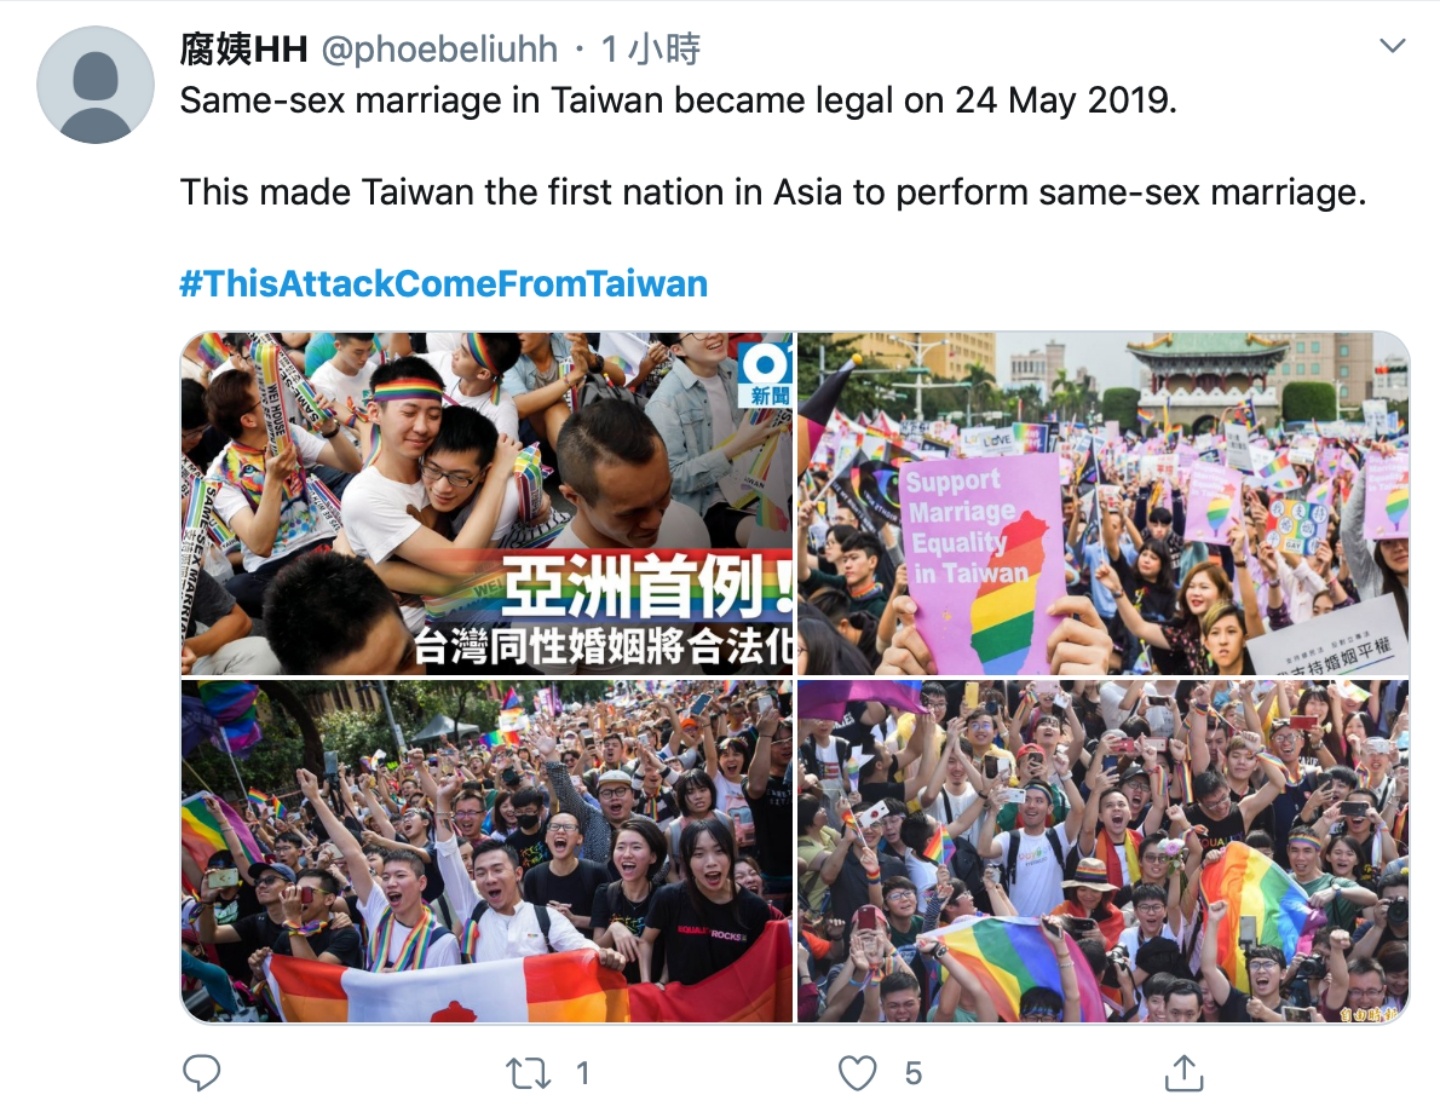 引用譚德塞『 來自台灣的攻擊 』指控！全球網友發起『 #ThisAttackComeFromTaiwan 』推文運動替台灣發聲